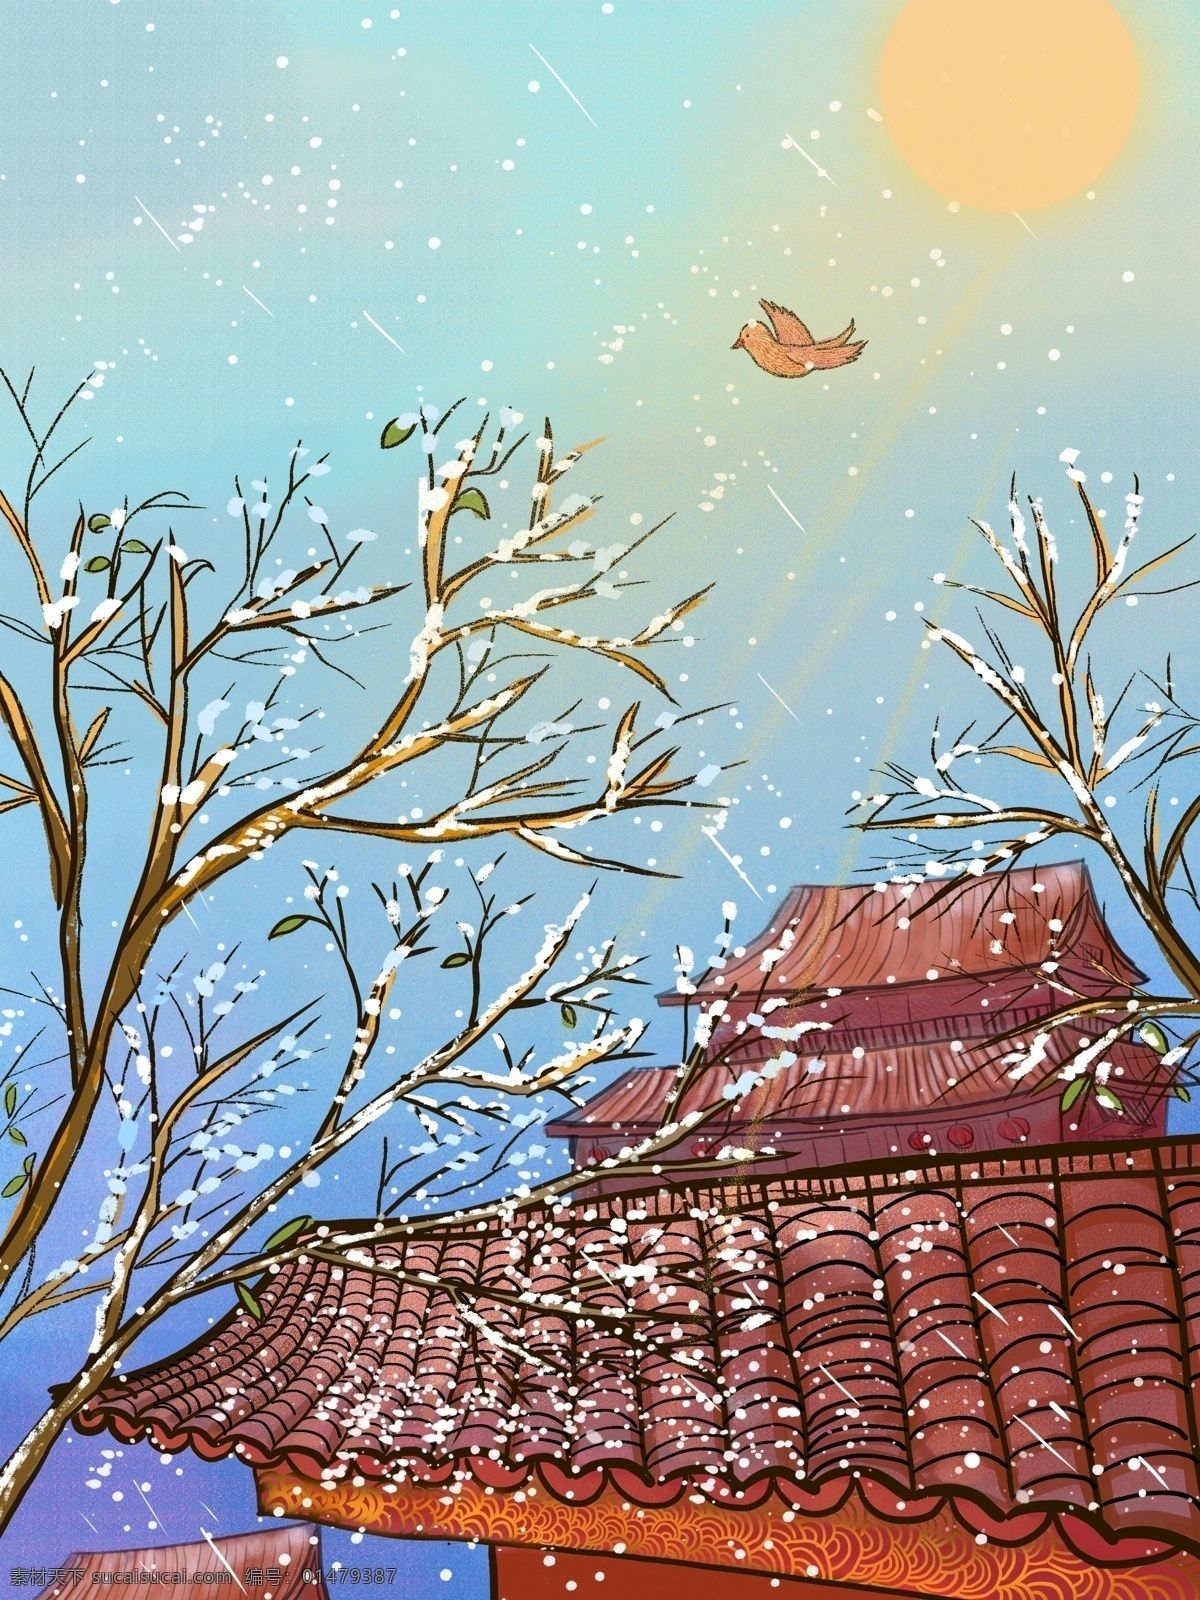 中国 风 水彩画 十二月 你好 下雪 唯美 插画 冬天 雪景 阳光 肌理 中国风 十二月你好 唯美清新 大雪 早安 水彩水墨